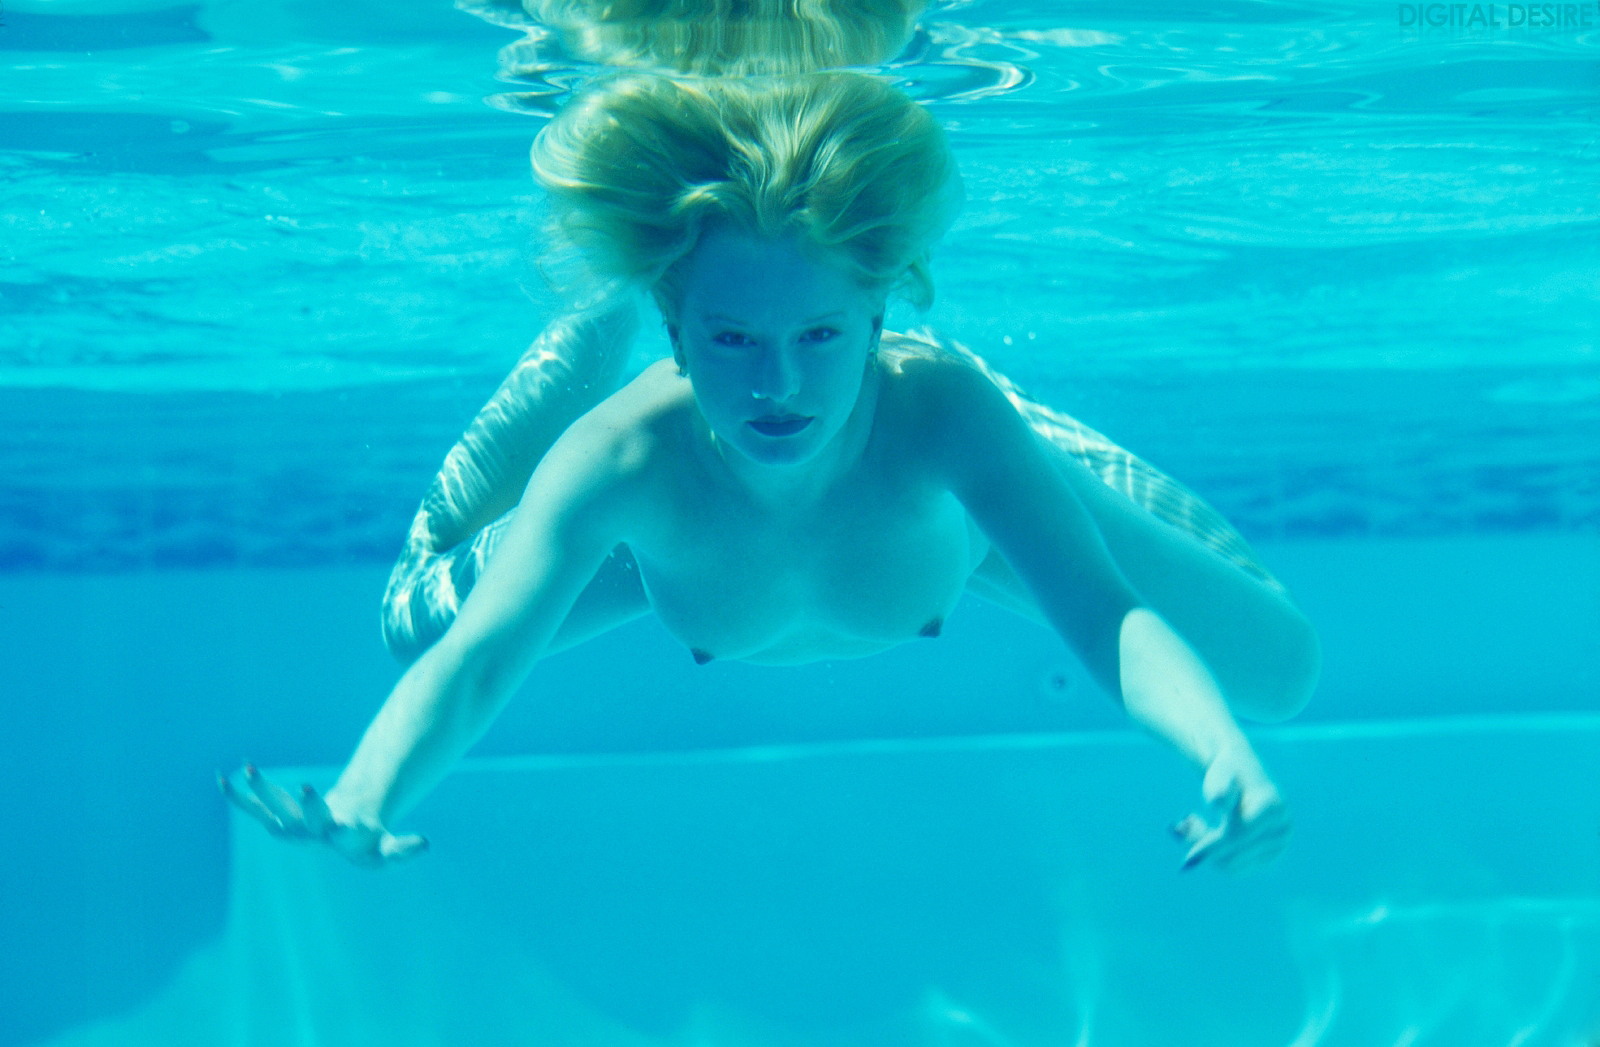 sophia-naked-underwater-pool-pussy-blonde-16